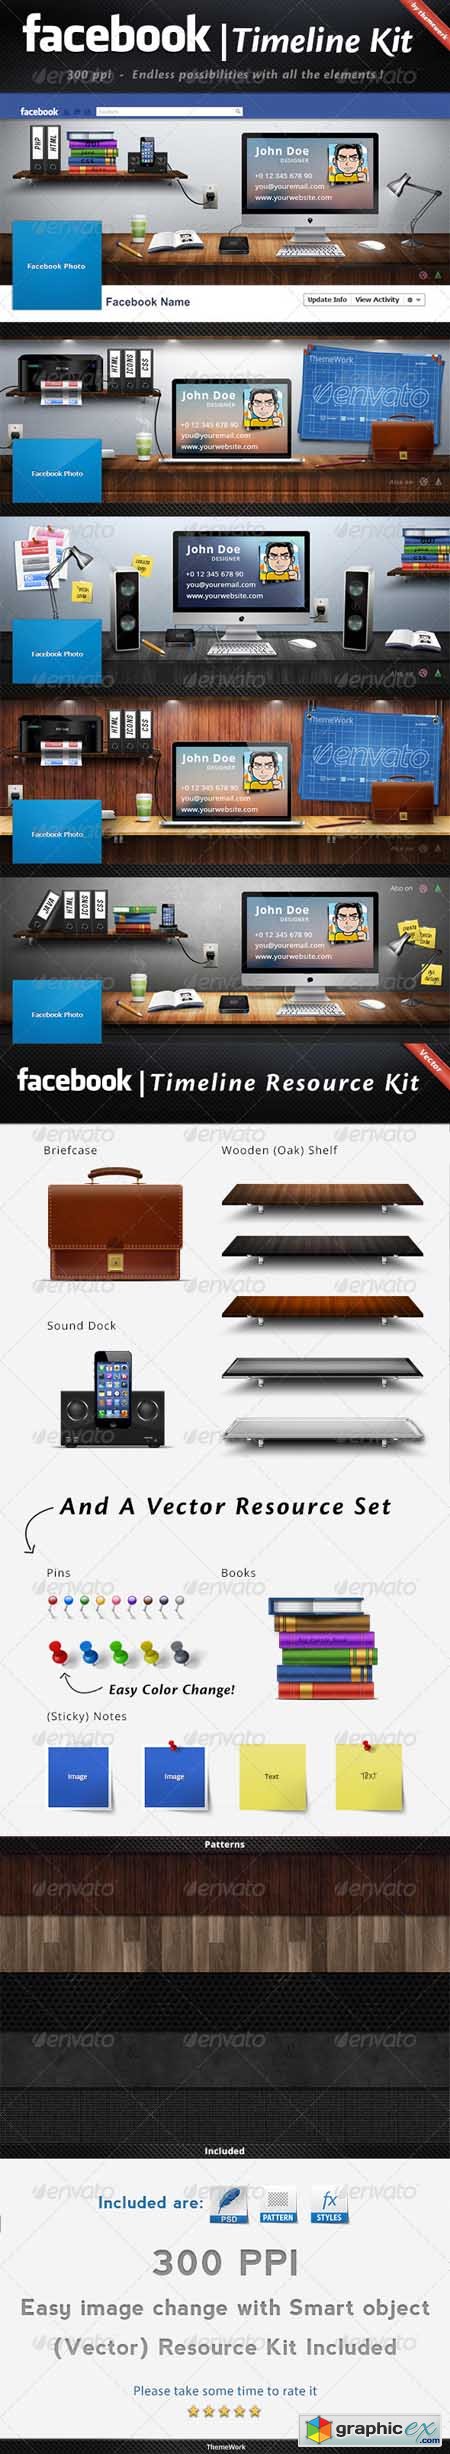 FB Timeline Kit